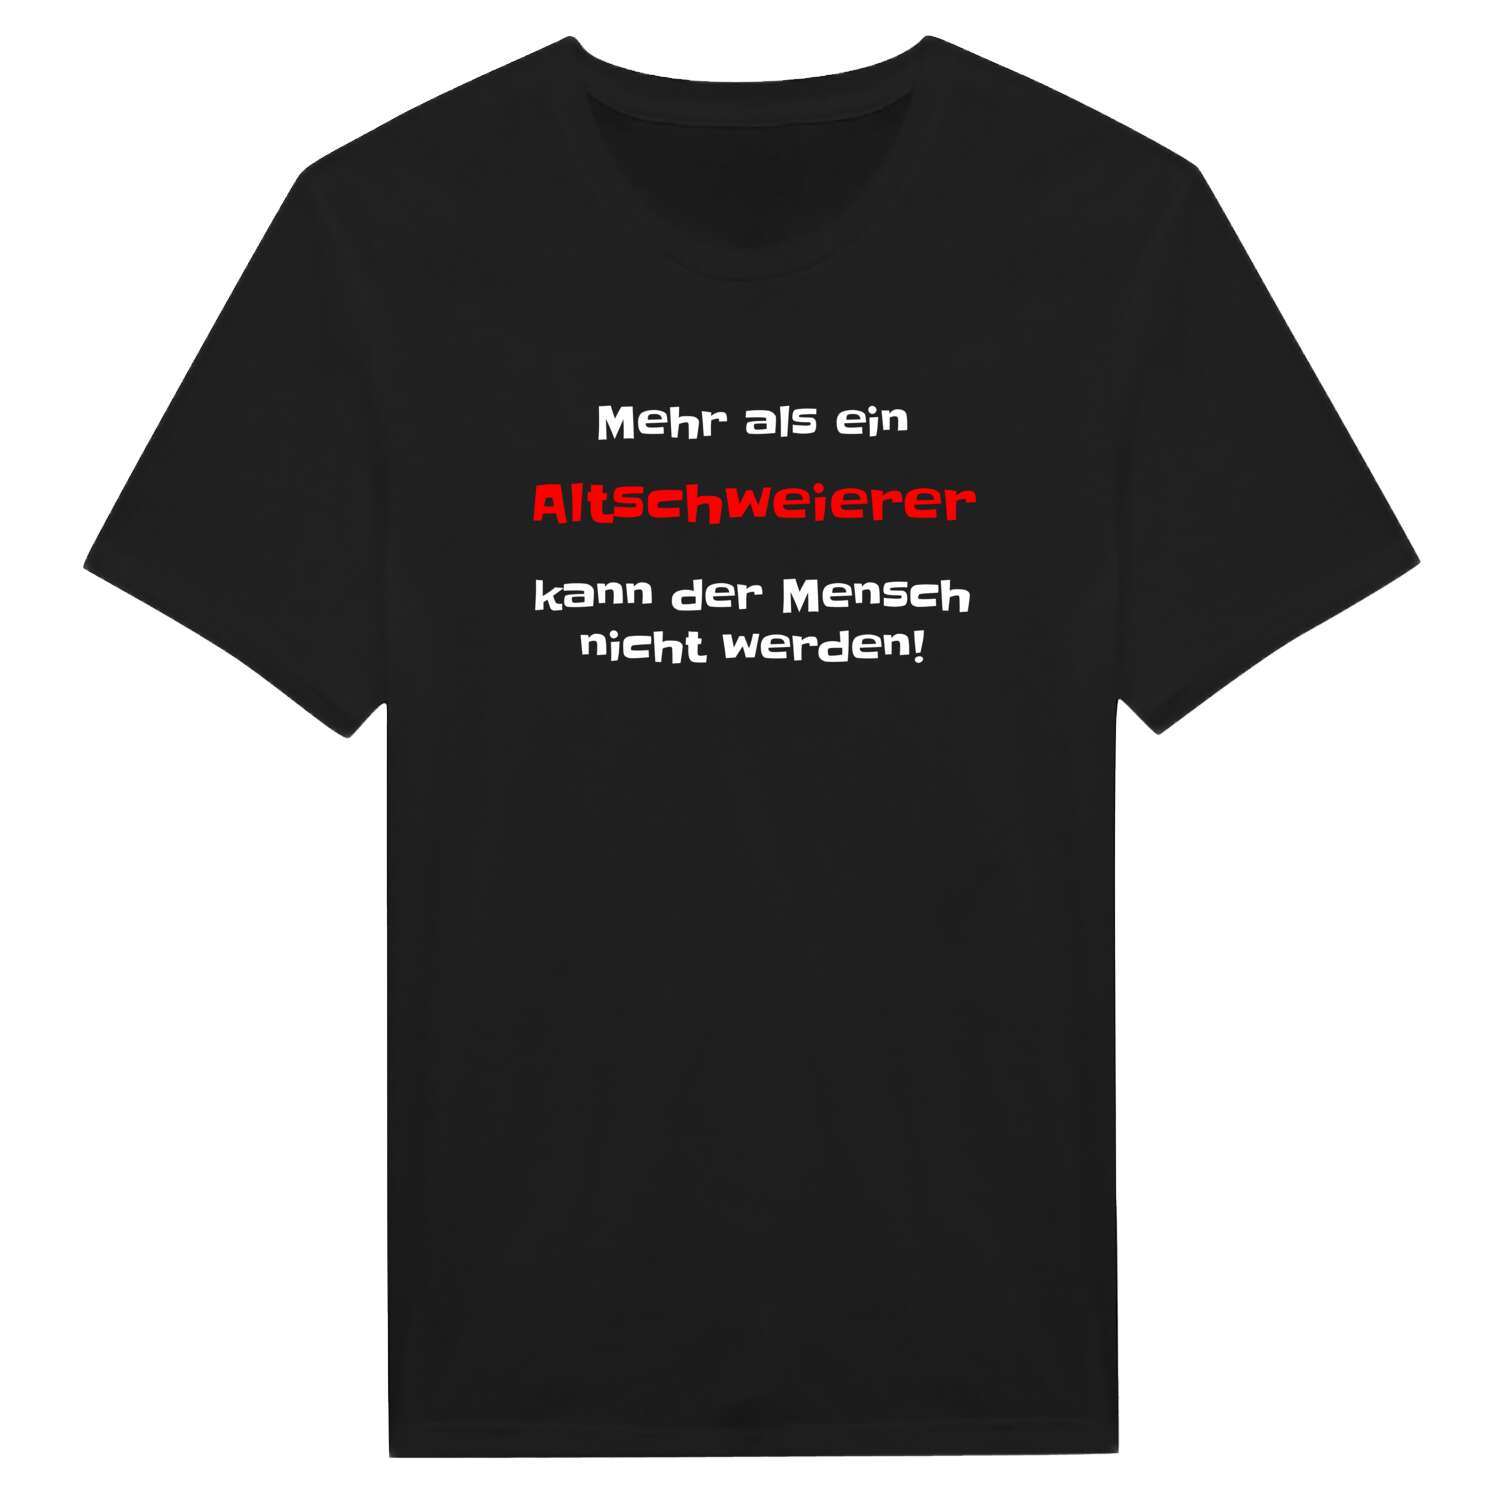 Altschweier T-Shirt »Mehr als ein«